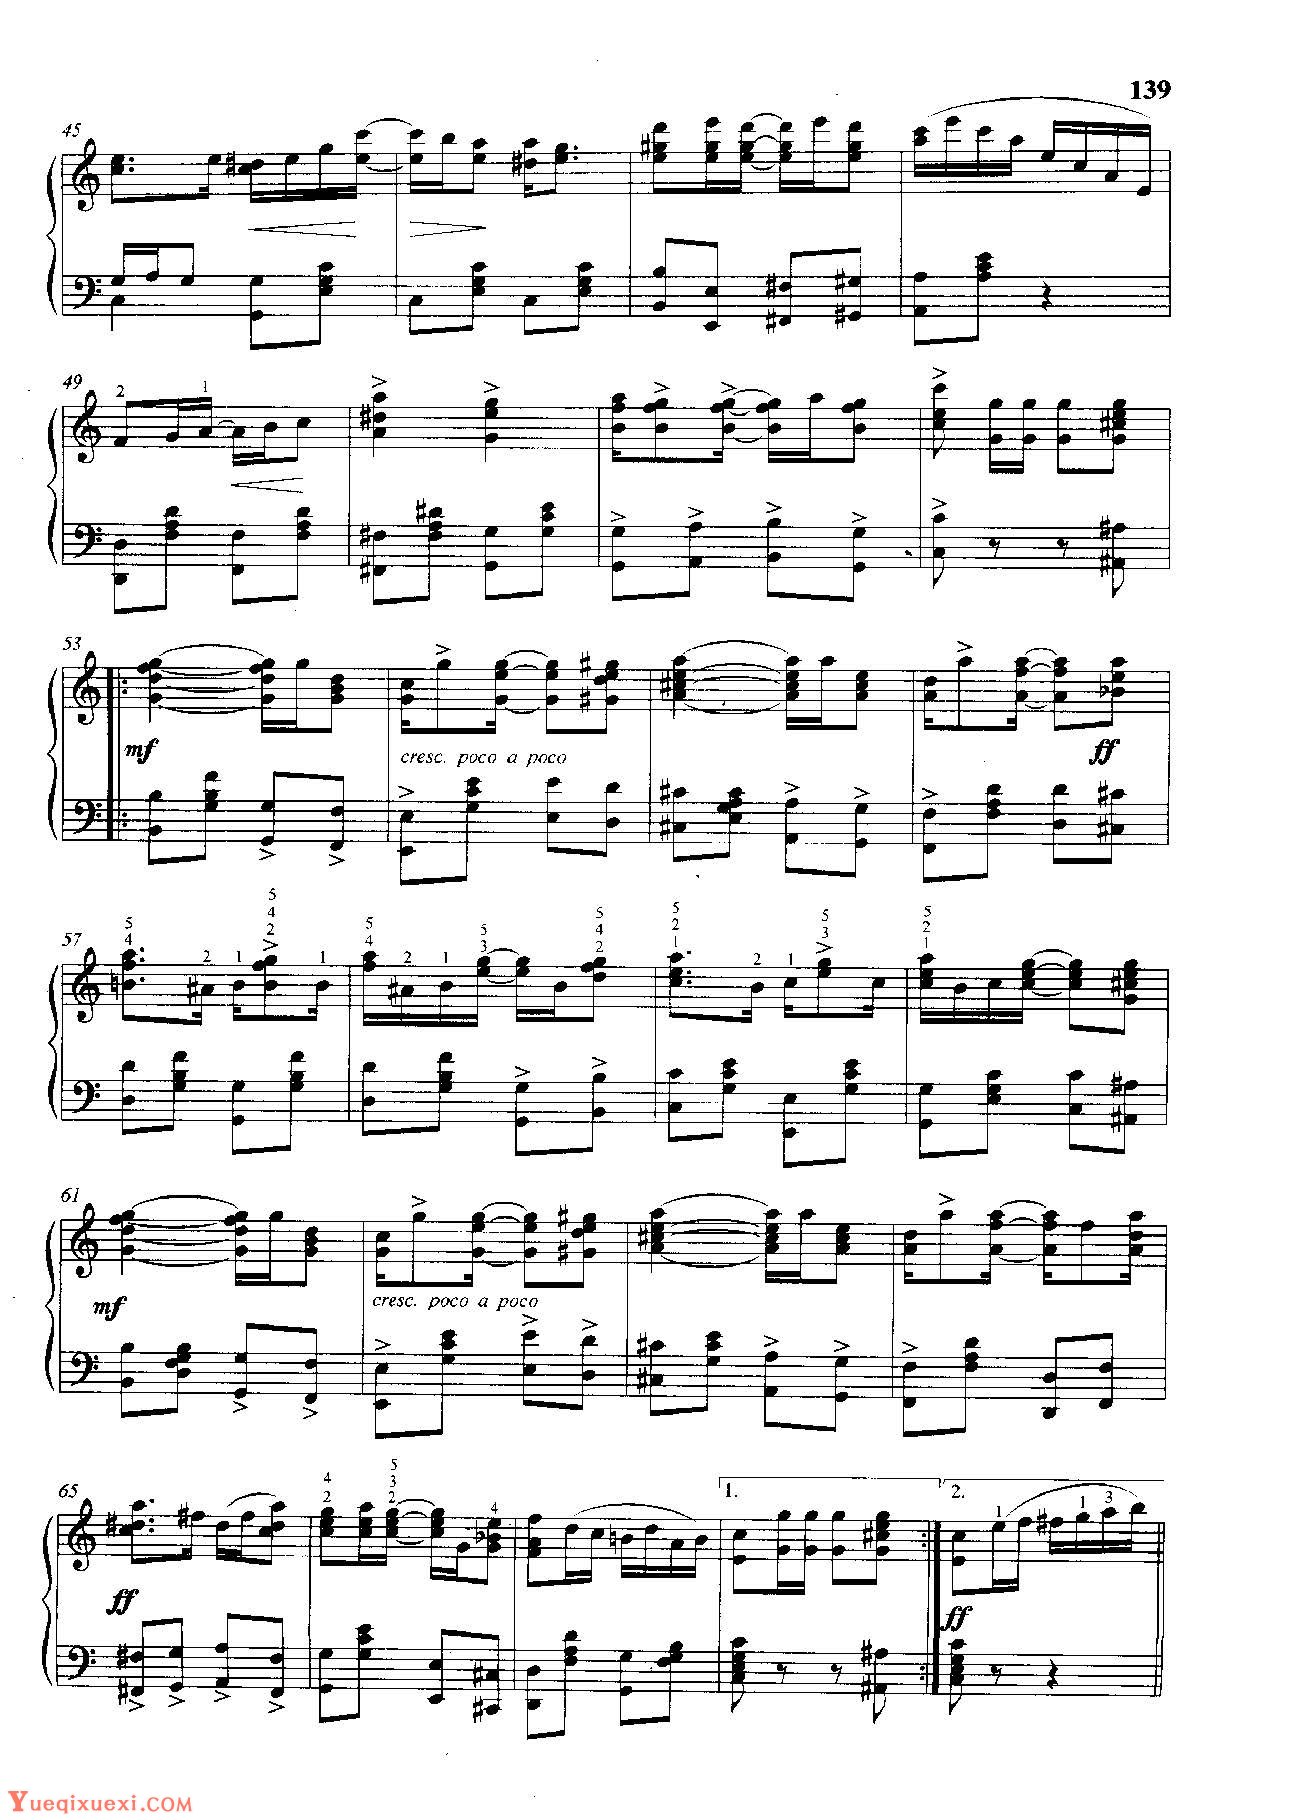 雷格泰姆钢琴乐谱《斯科特·乔普林的新雷格》雷格泰姆之王斯科特·乔普林